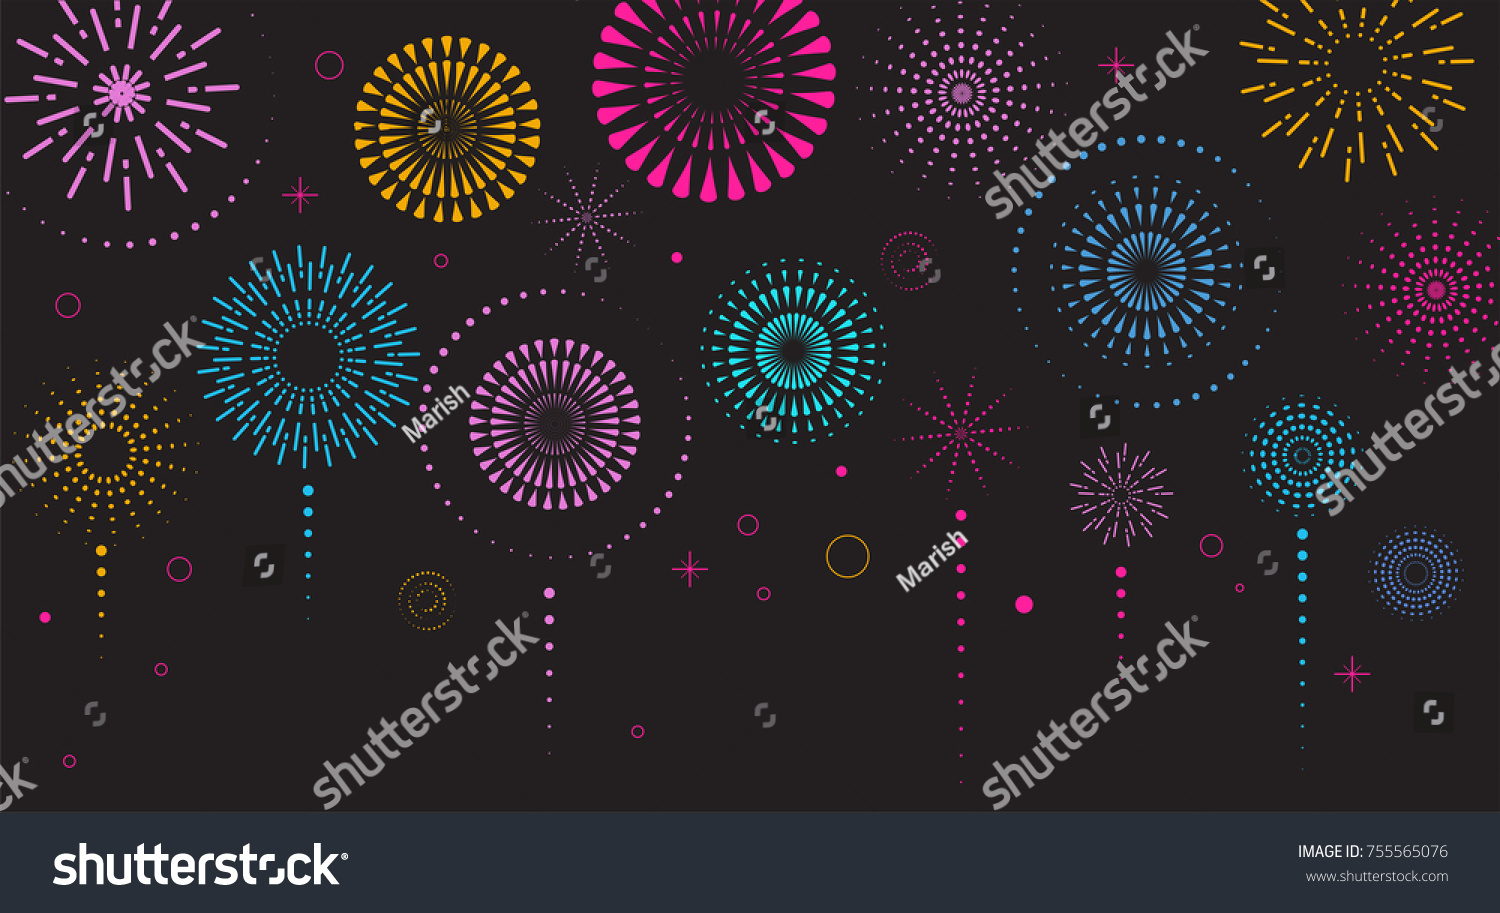 SVG of Fireworks and celebration background, winner, victory poster, banner  svg